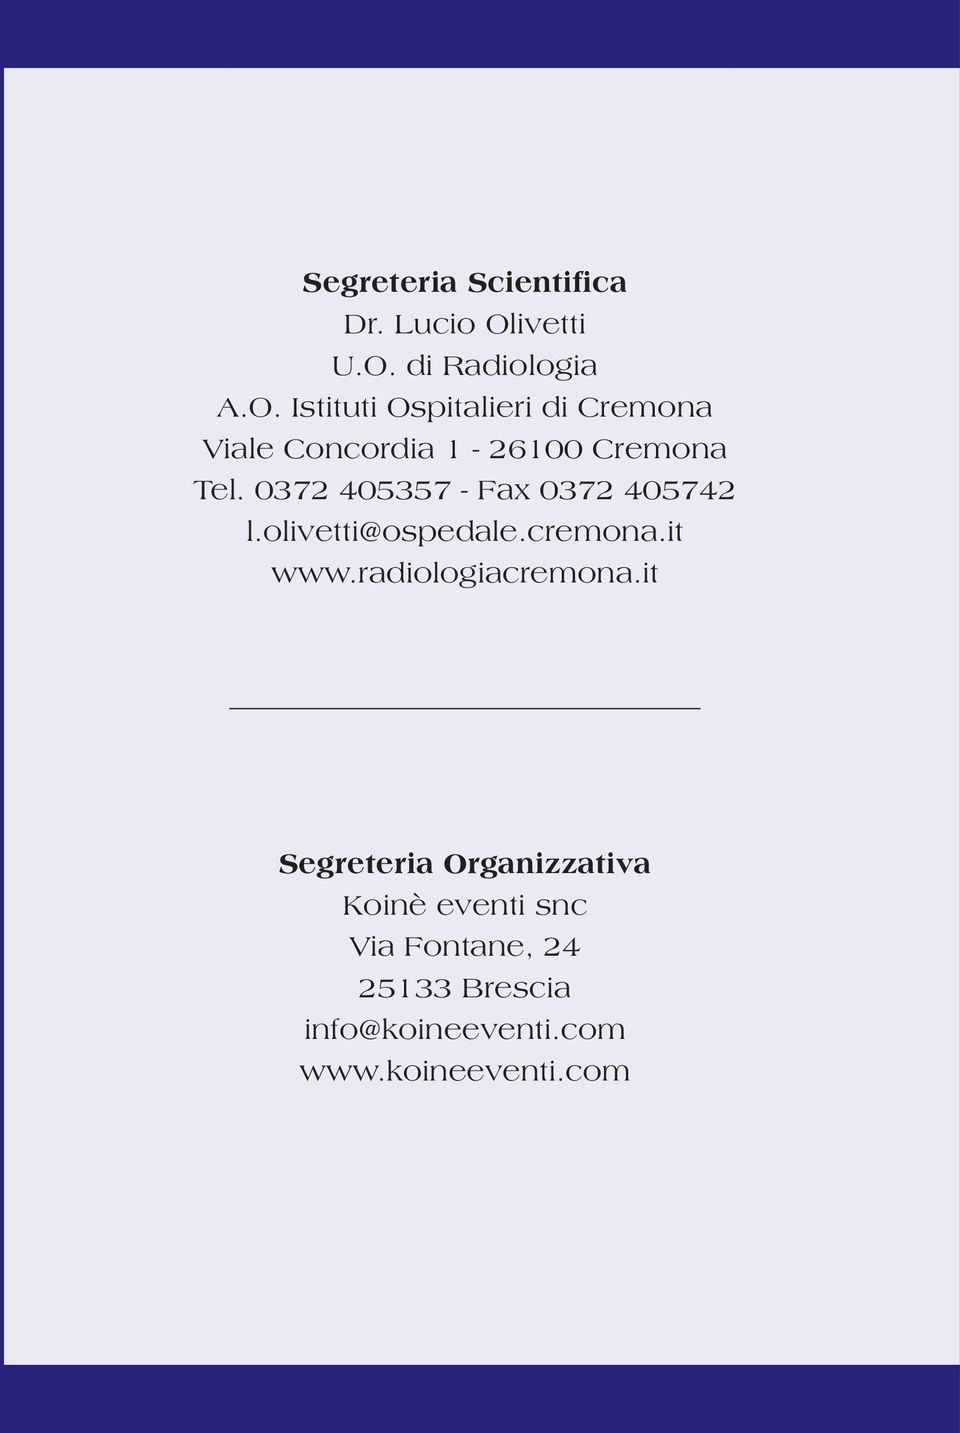 0372 405357 - Fax 0372 405742 l.olivetti@ospedale.cremona.it www.radiologiacremona.